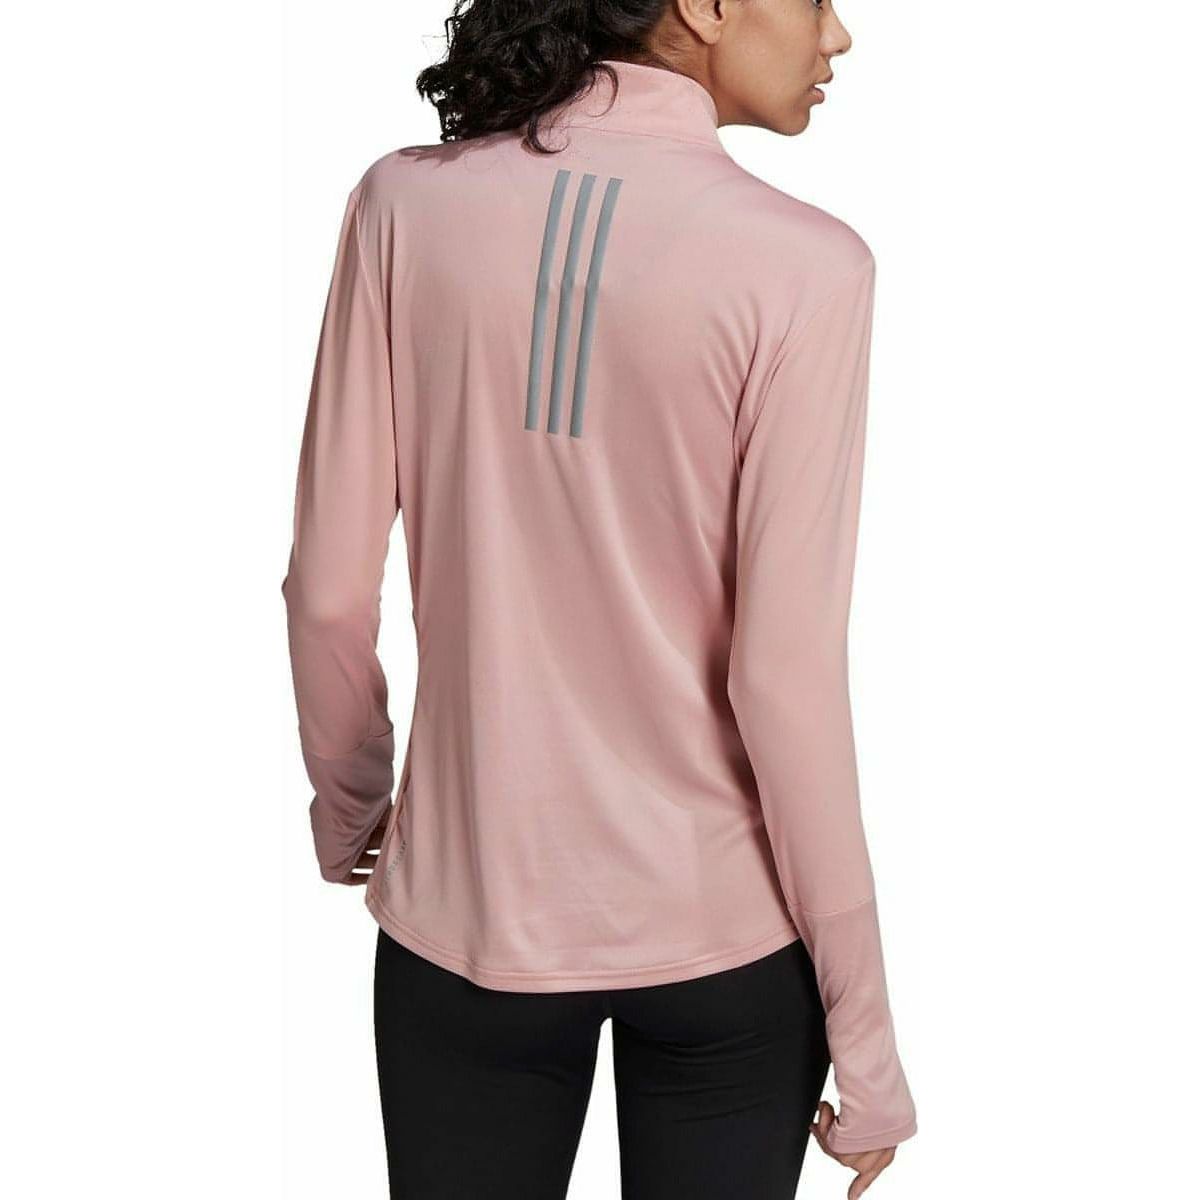 adidas Own The Run Half Zip Long Sleeve Womens Running Top - Pink - Start Fitness